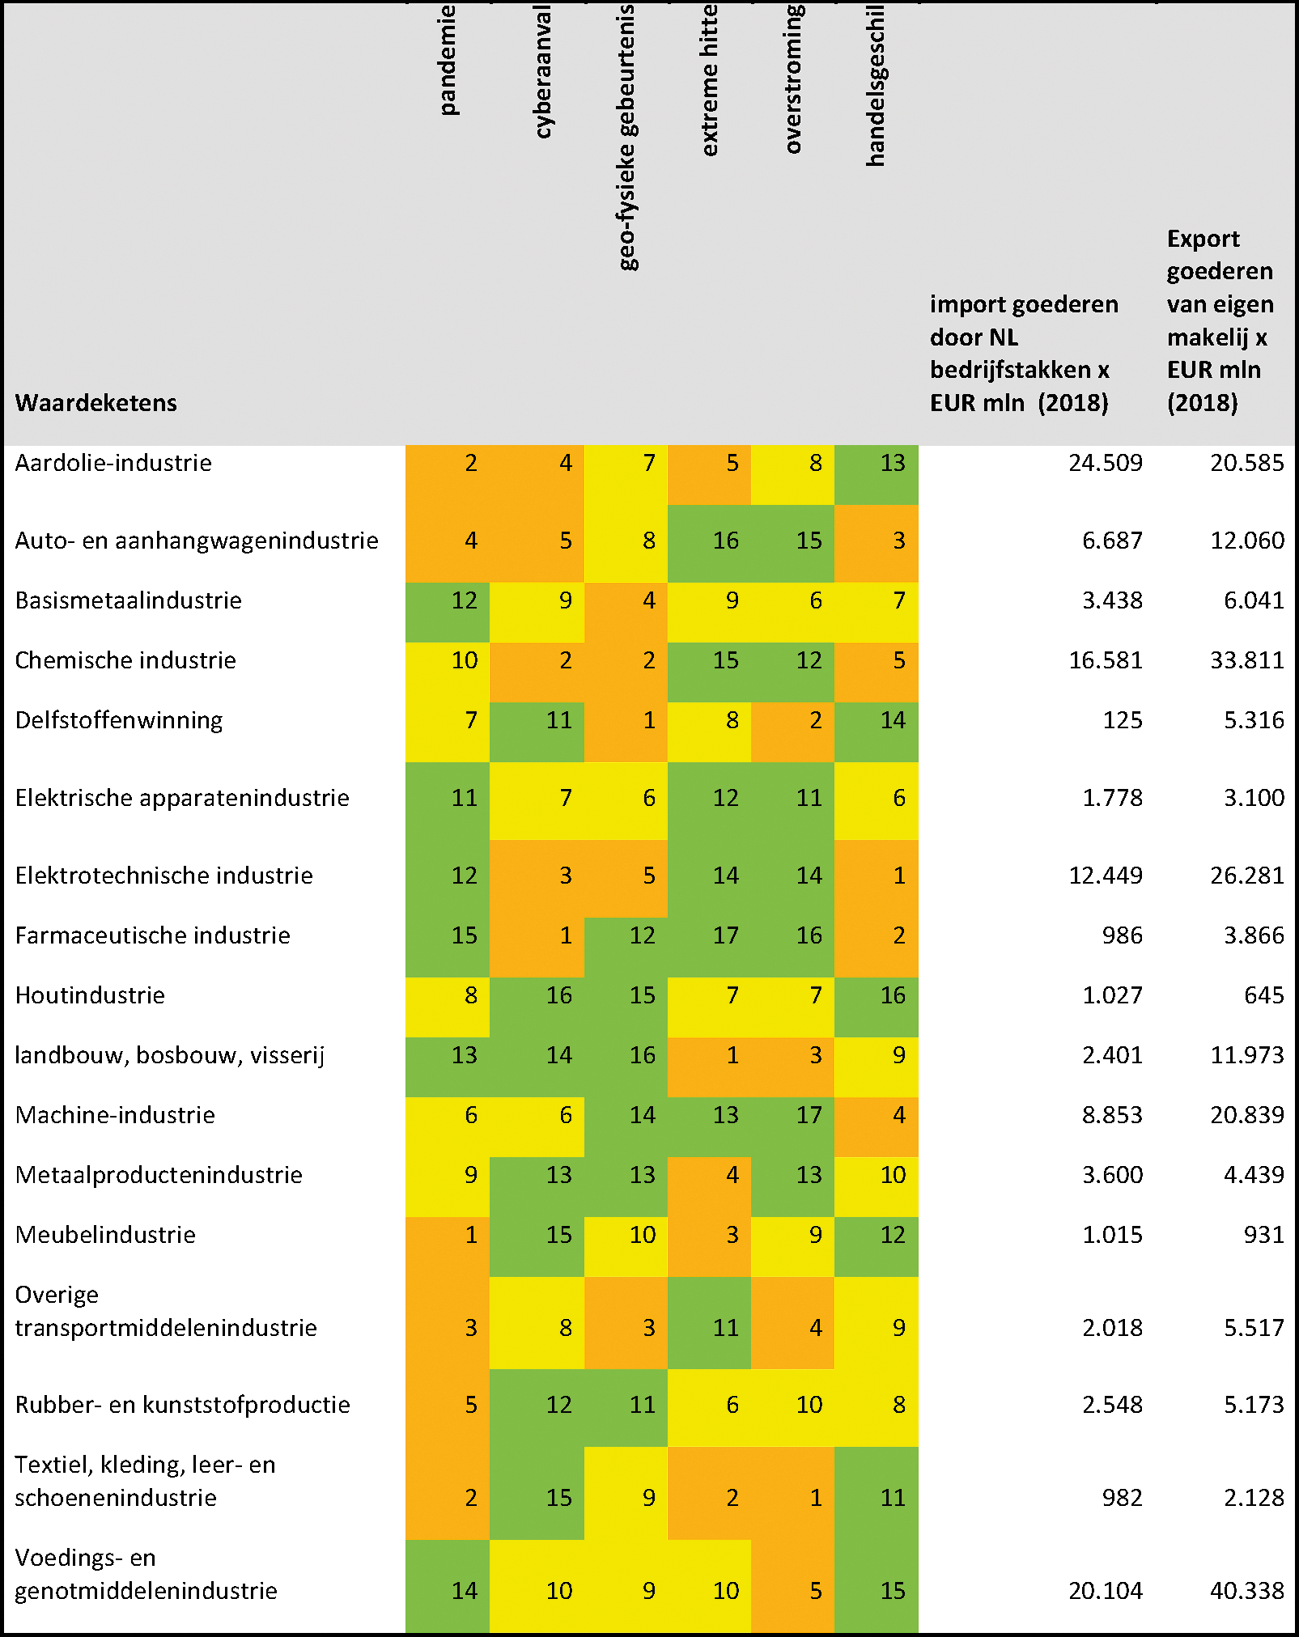 Tabel 2: Rangschikking inschatting kwetsbaarheid waardeketens van geselecteerde Nederlandse bedrijfstakken op basis van verschillende risicofactoren (1=hoogste gevoeligheid)1